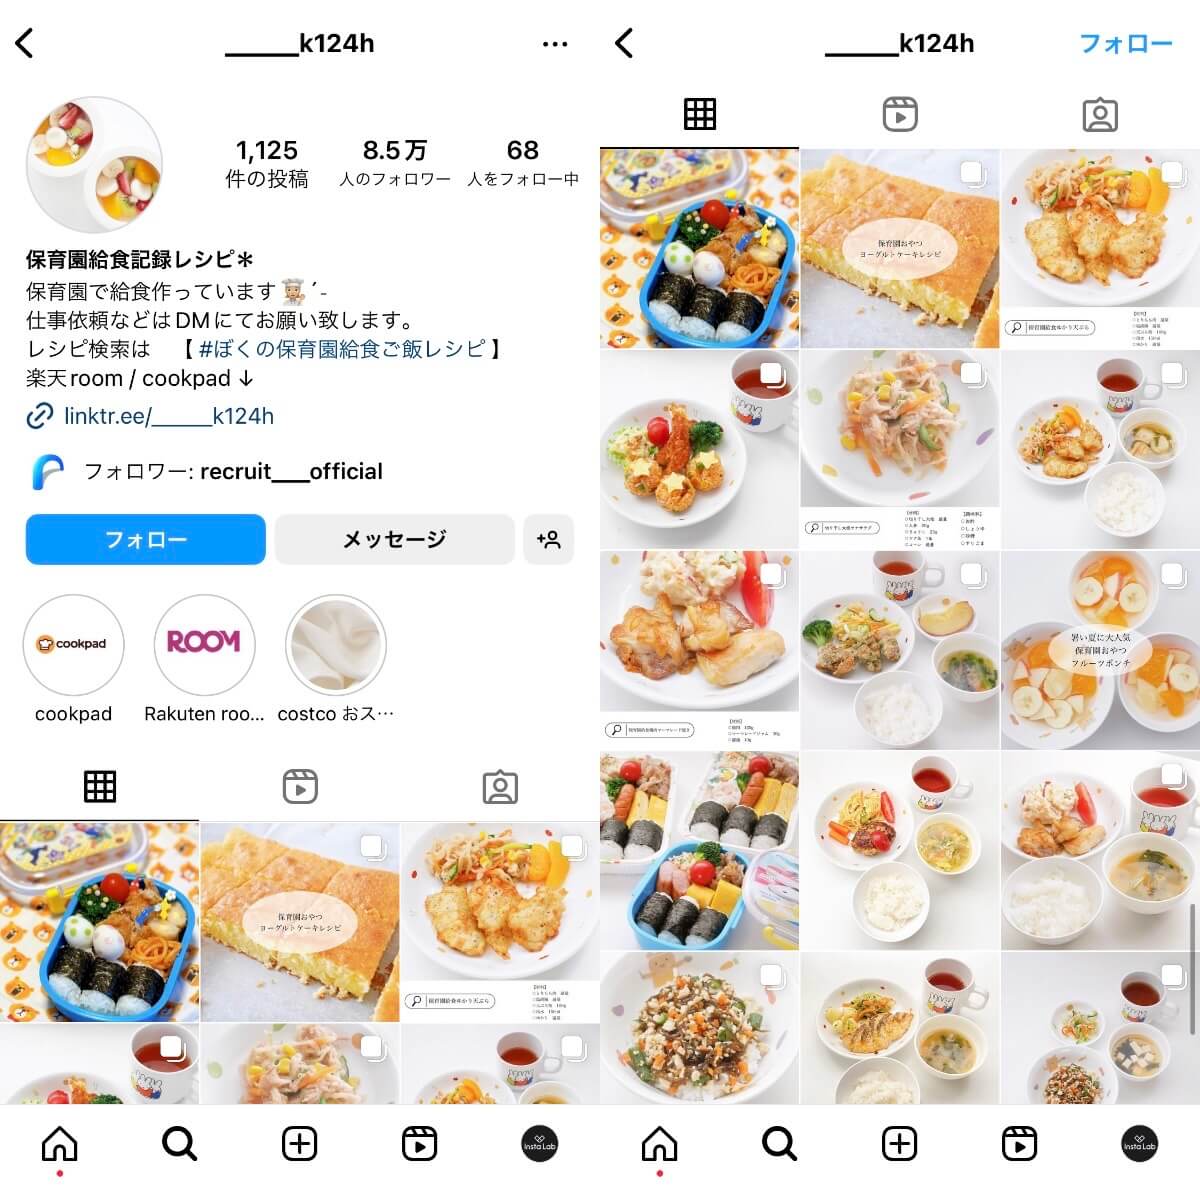 instagram-account-k124h